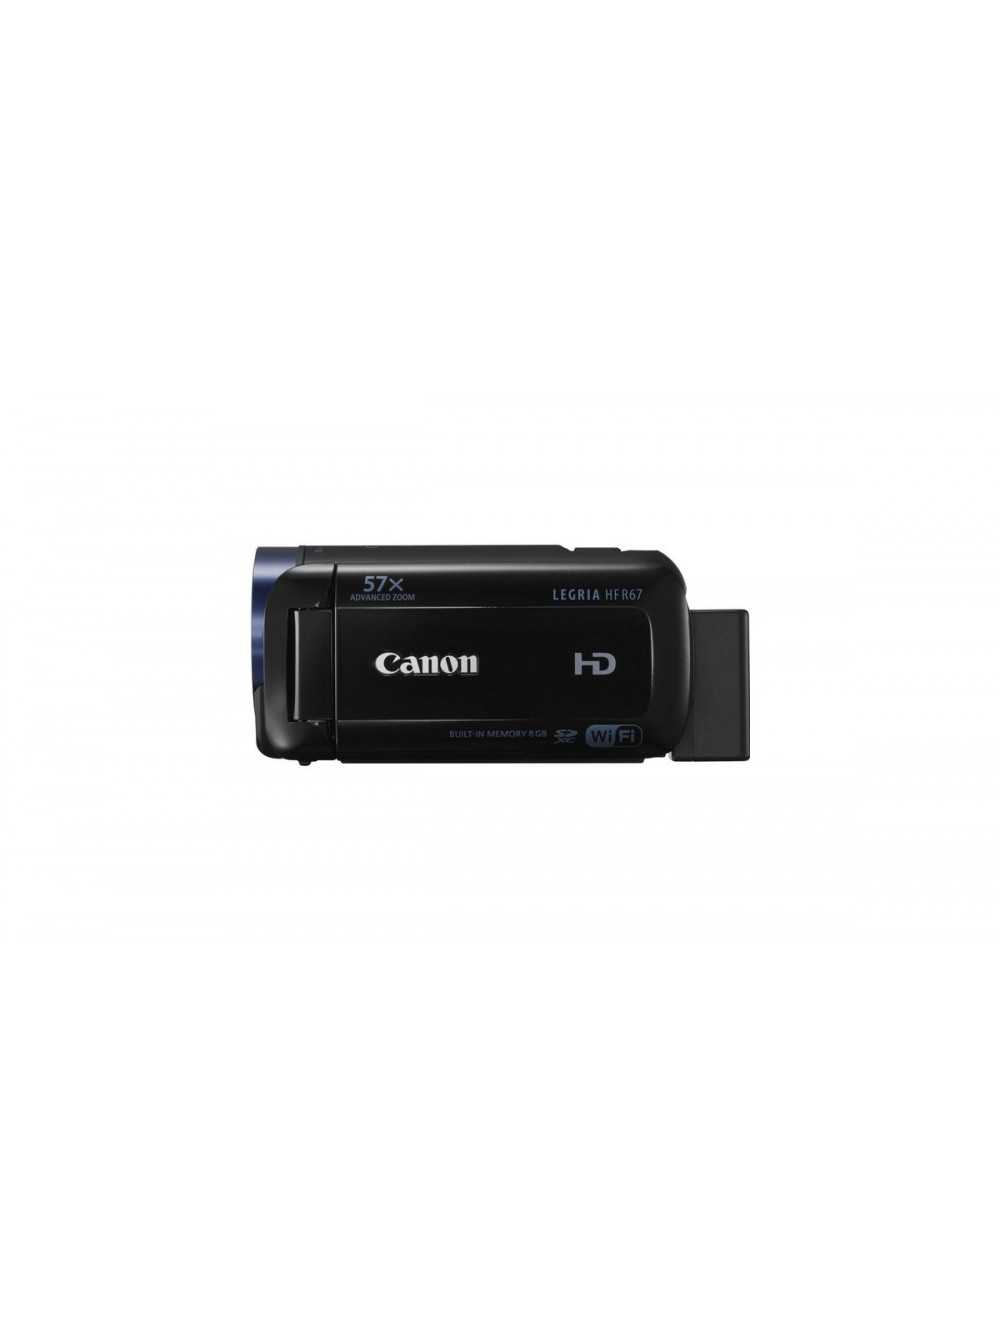 Видеокамера canon legria hf r38 — купить, цена и характеристики, отзывы